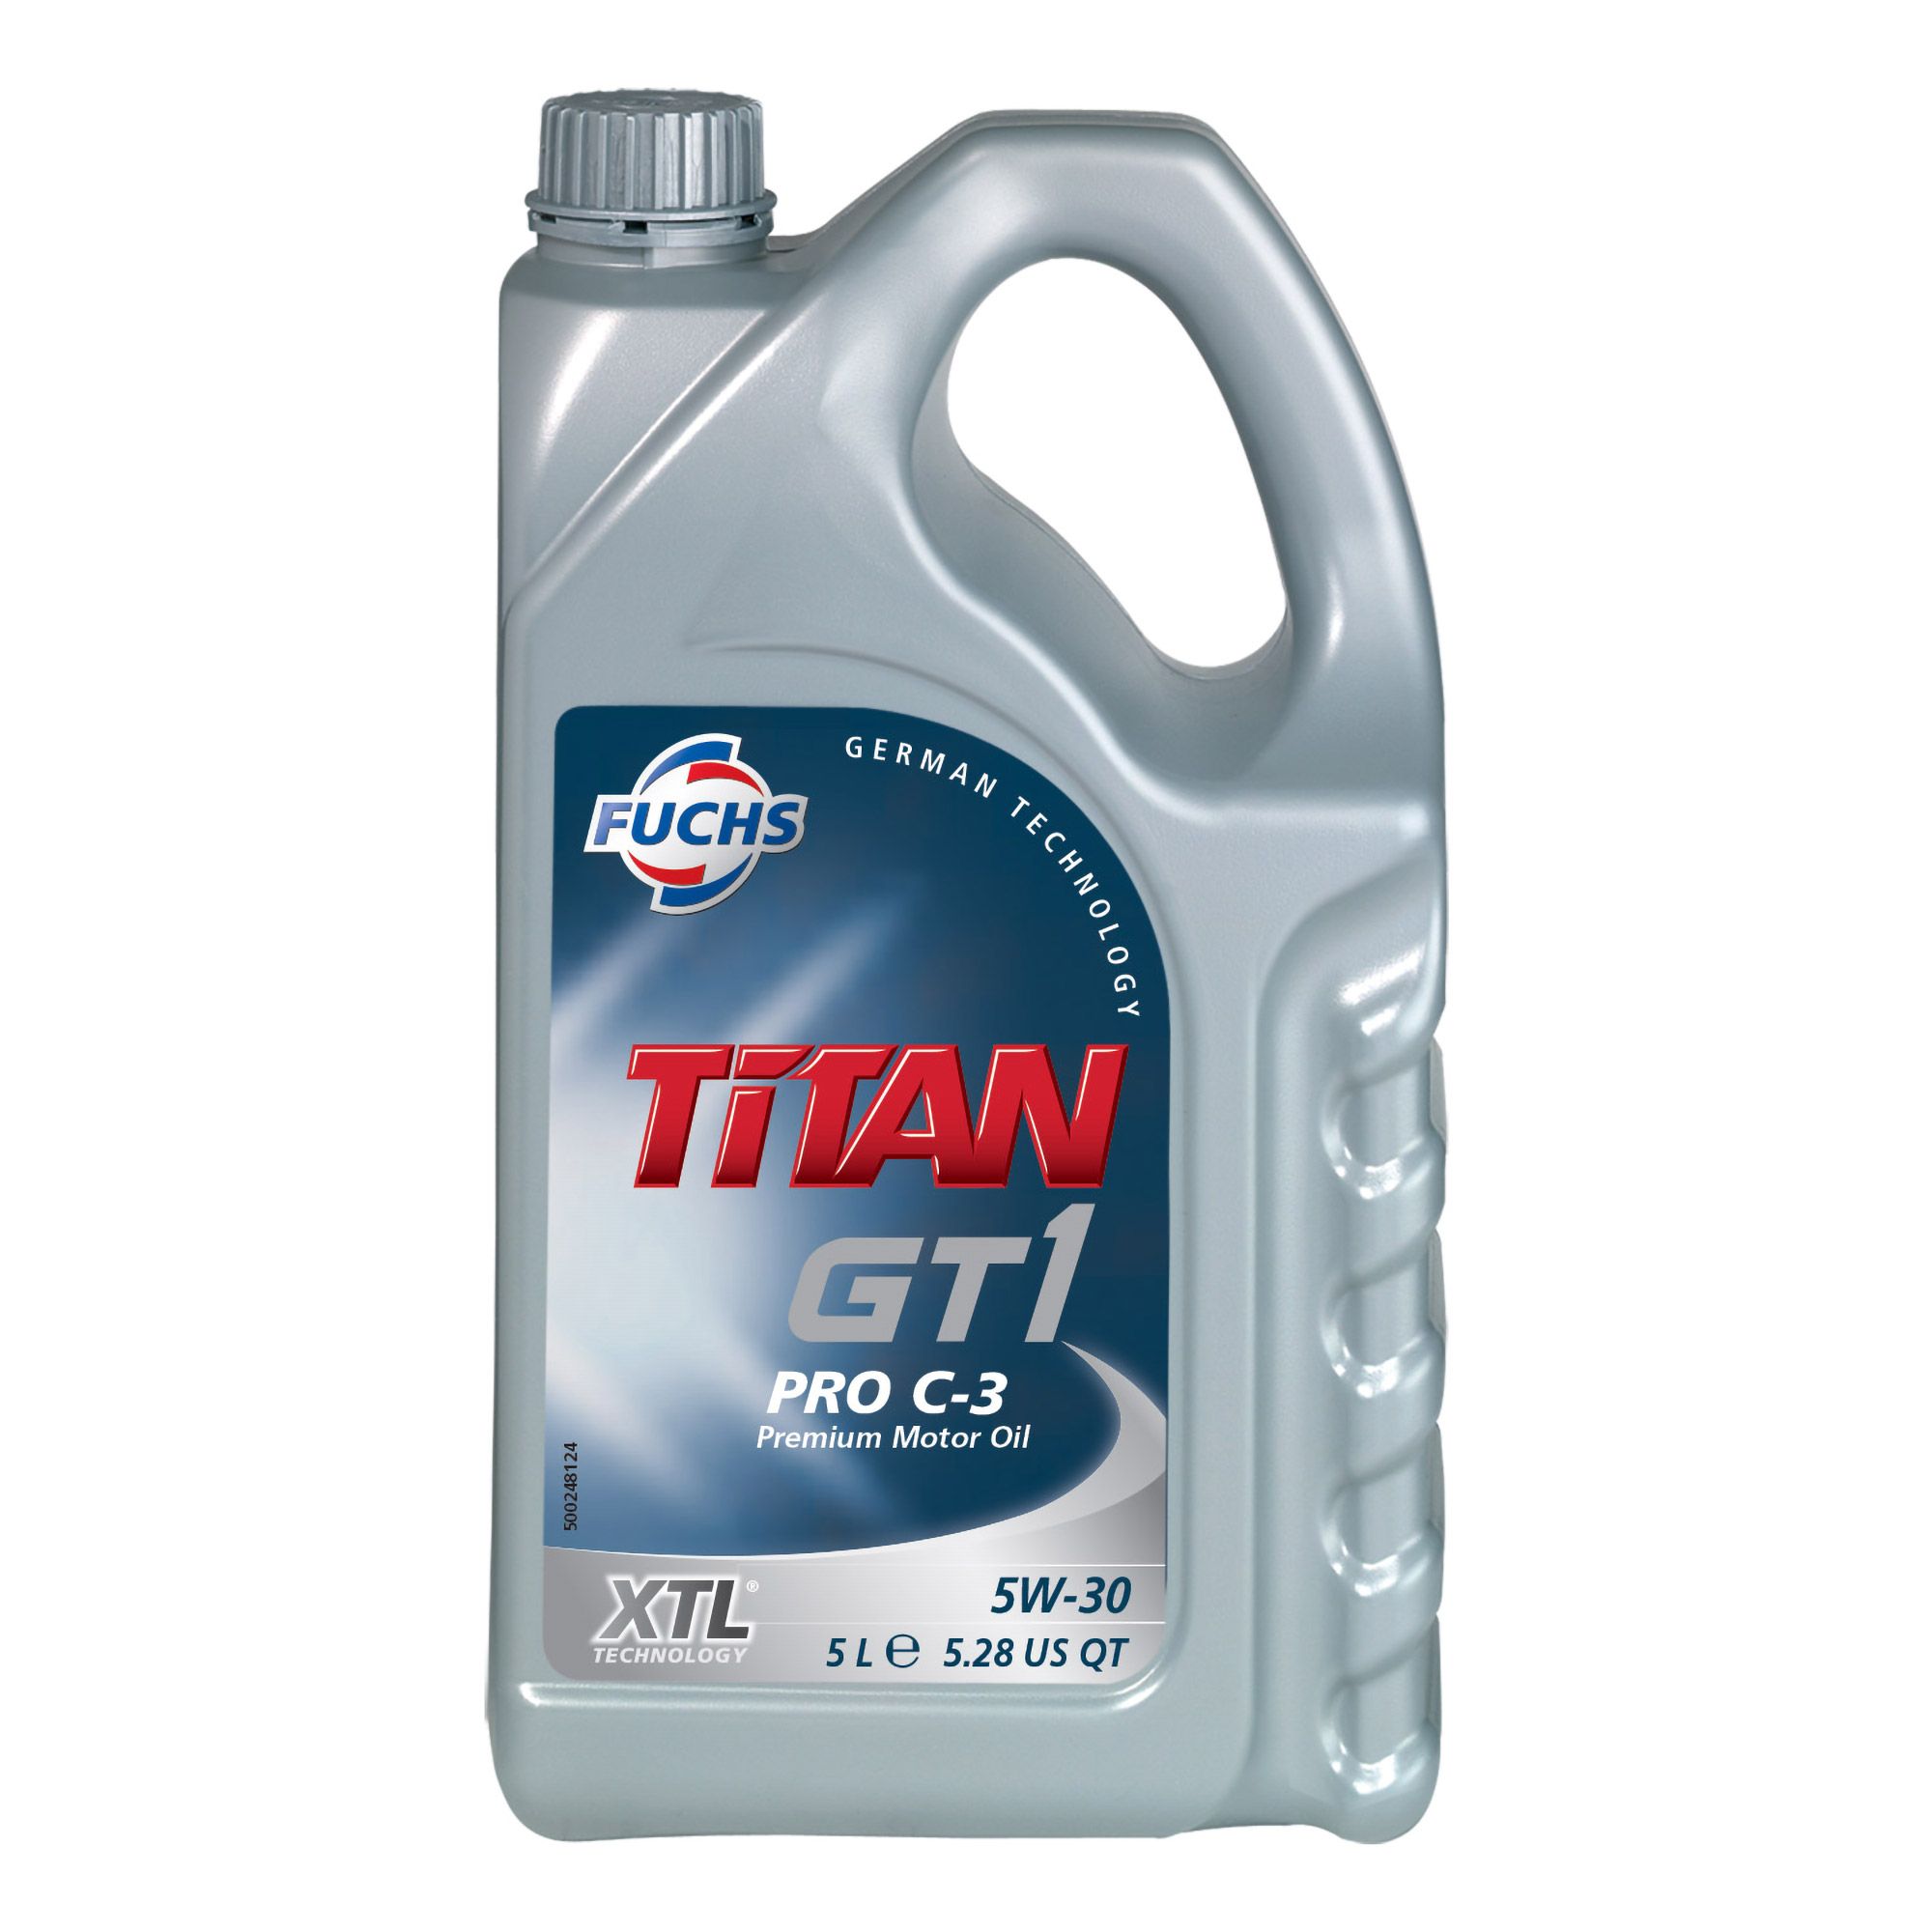 FUCHS Titan GT1 Pro C-3 5L 